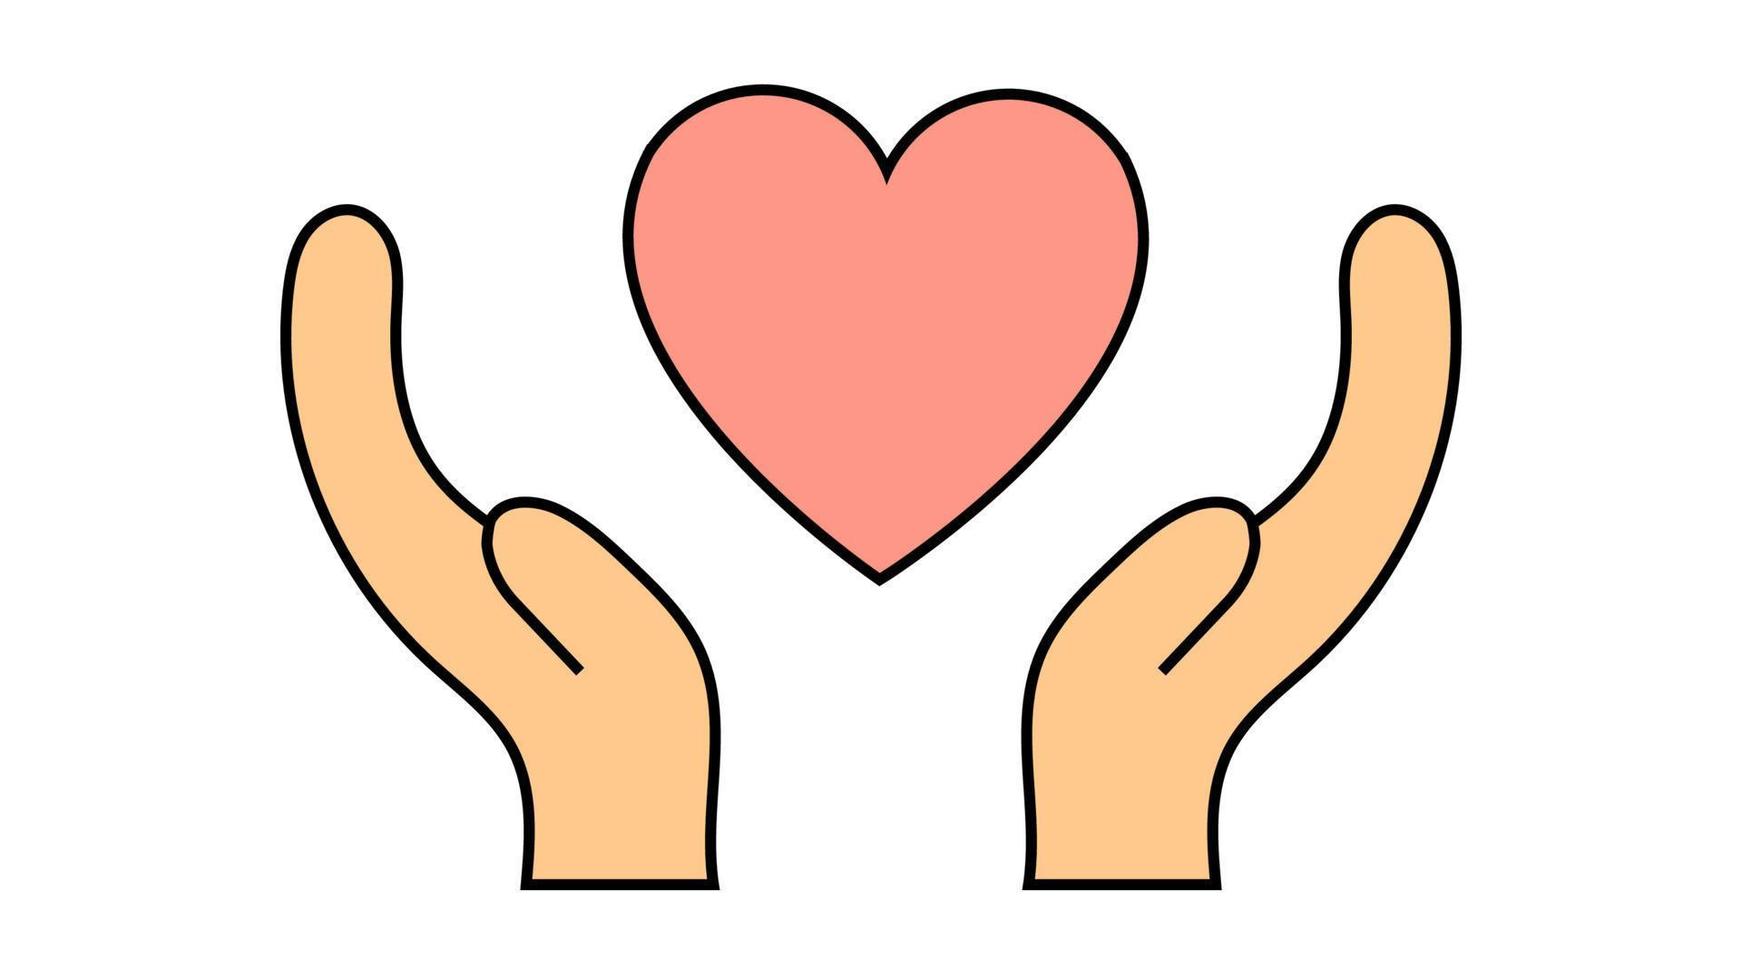 icône plate simple beaux coeurs dans les mains pour la fête de l'amour, la saint valentin ou le 8 mars. illustration vectorielle vecteur